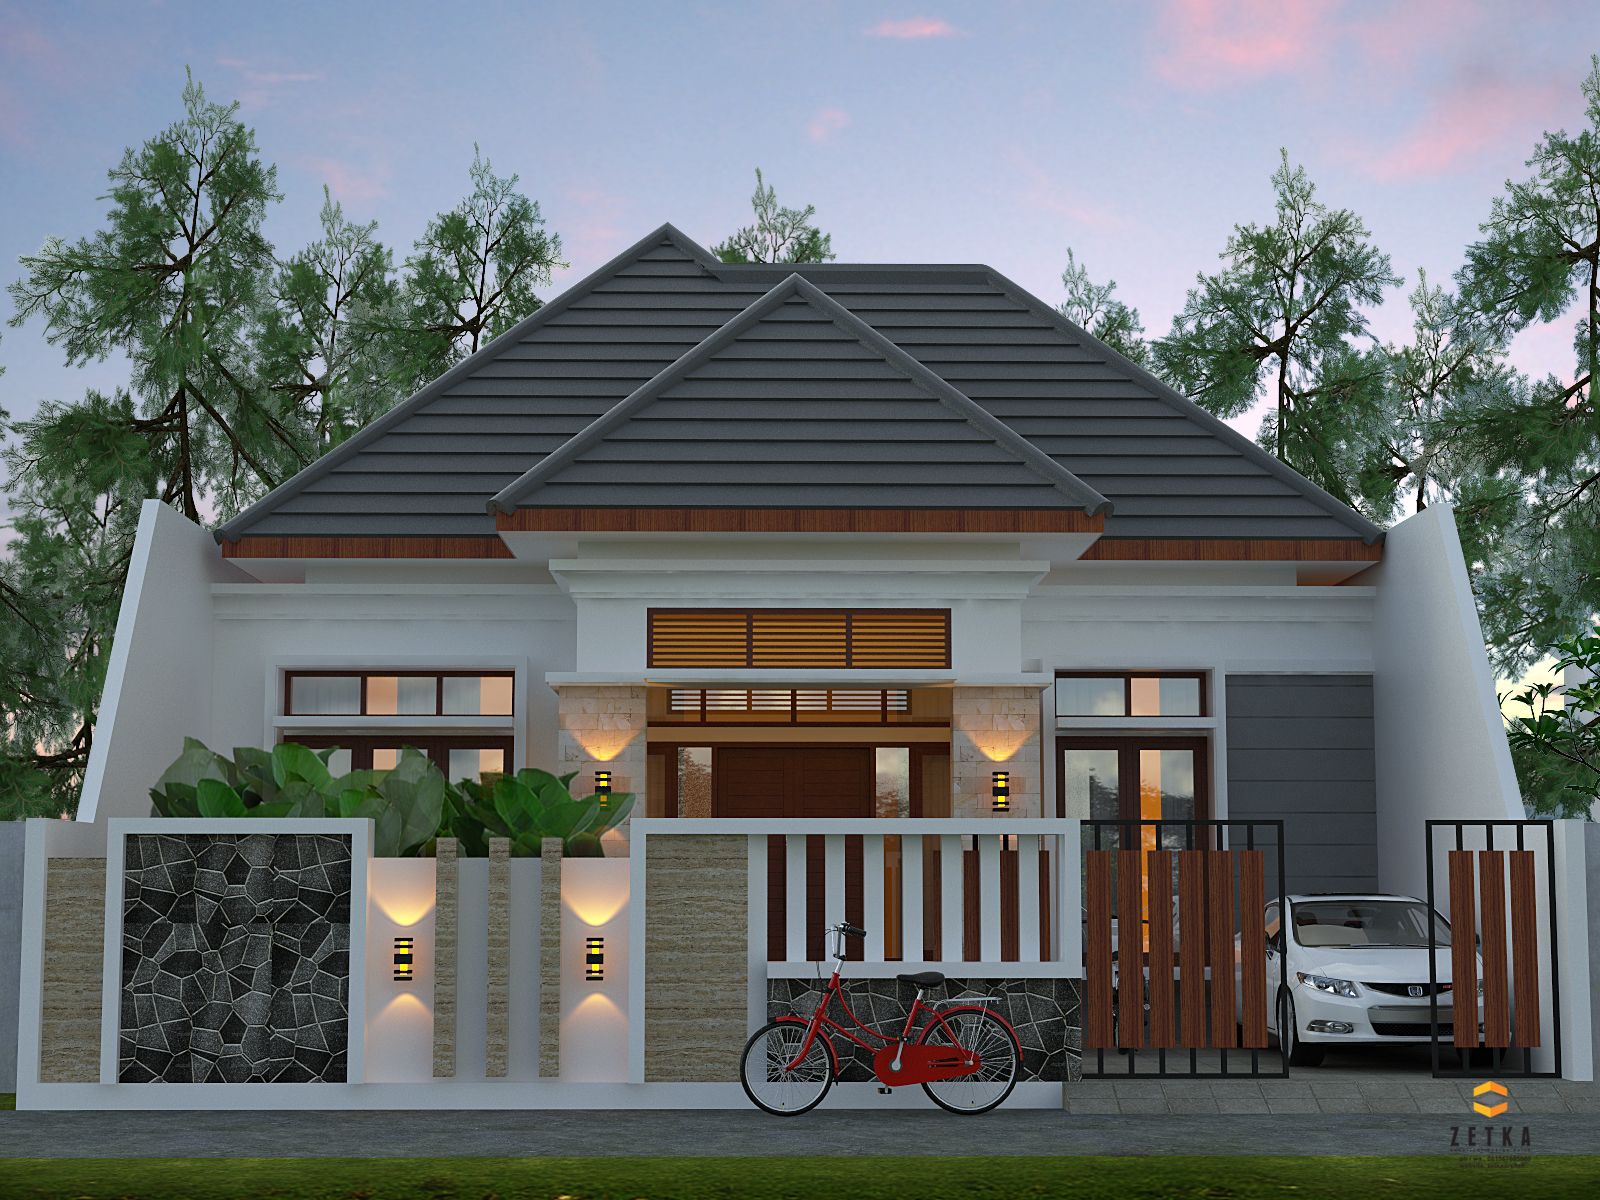 Kelebihan Konsep Desain Rumah Tropis Homeshabbycom Design Home Plans